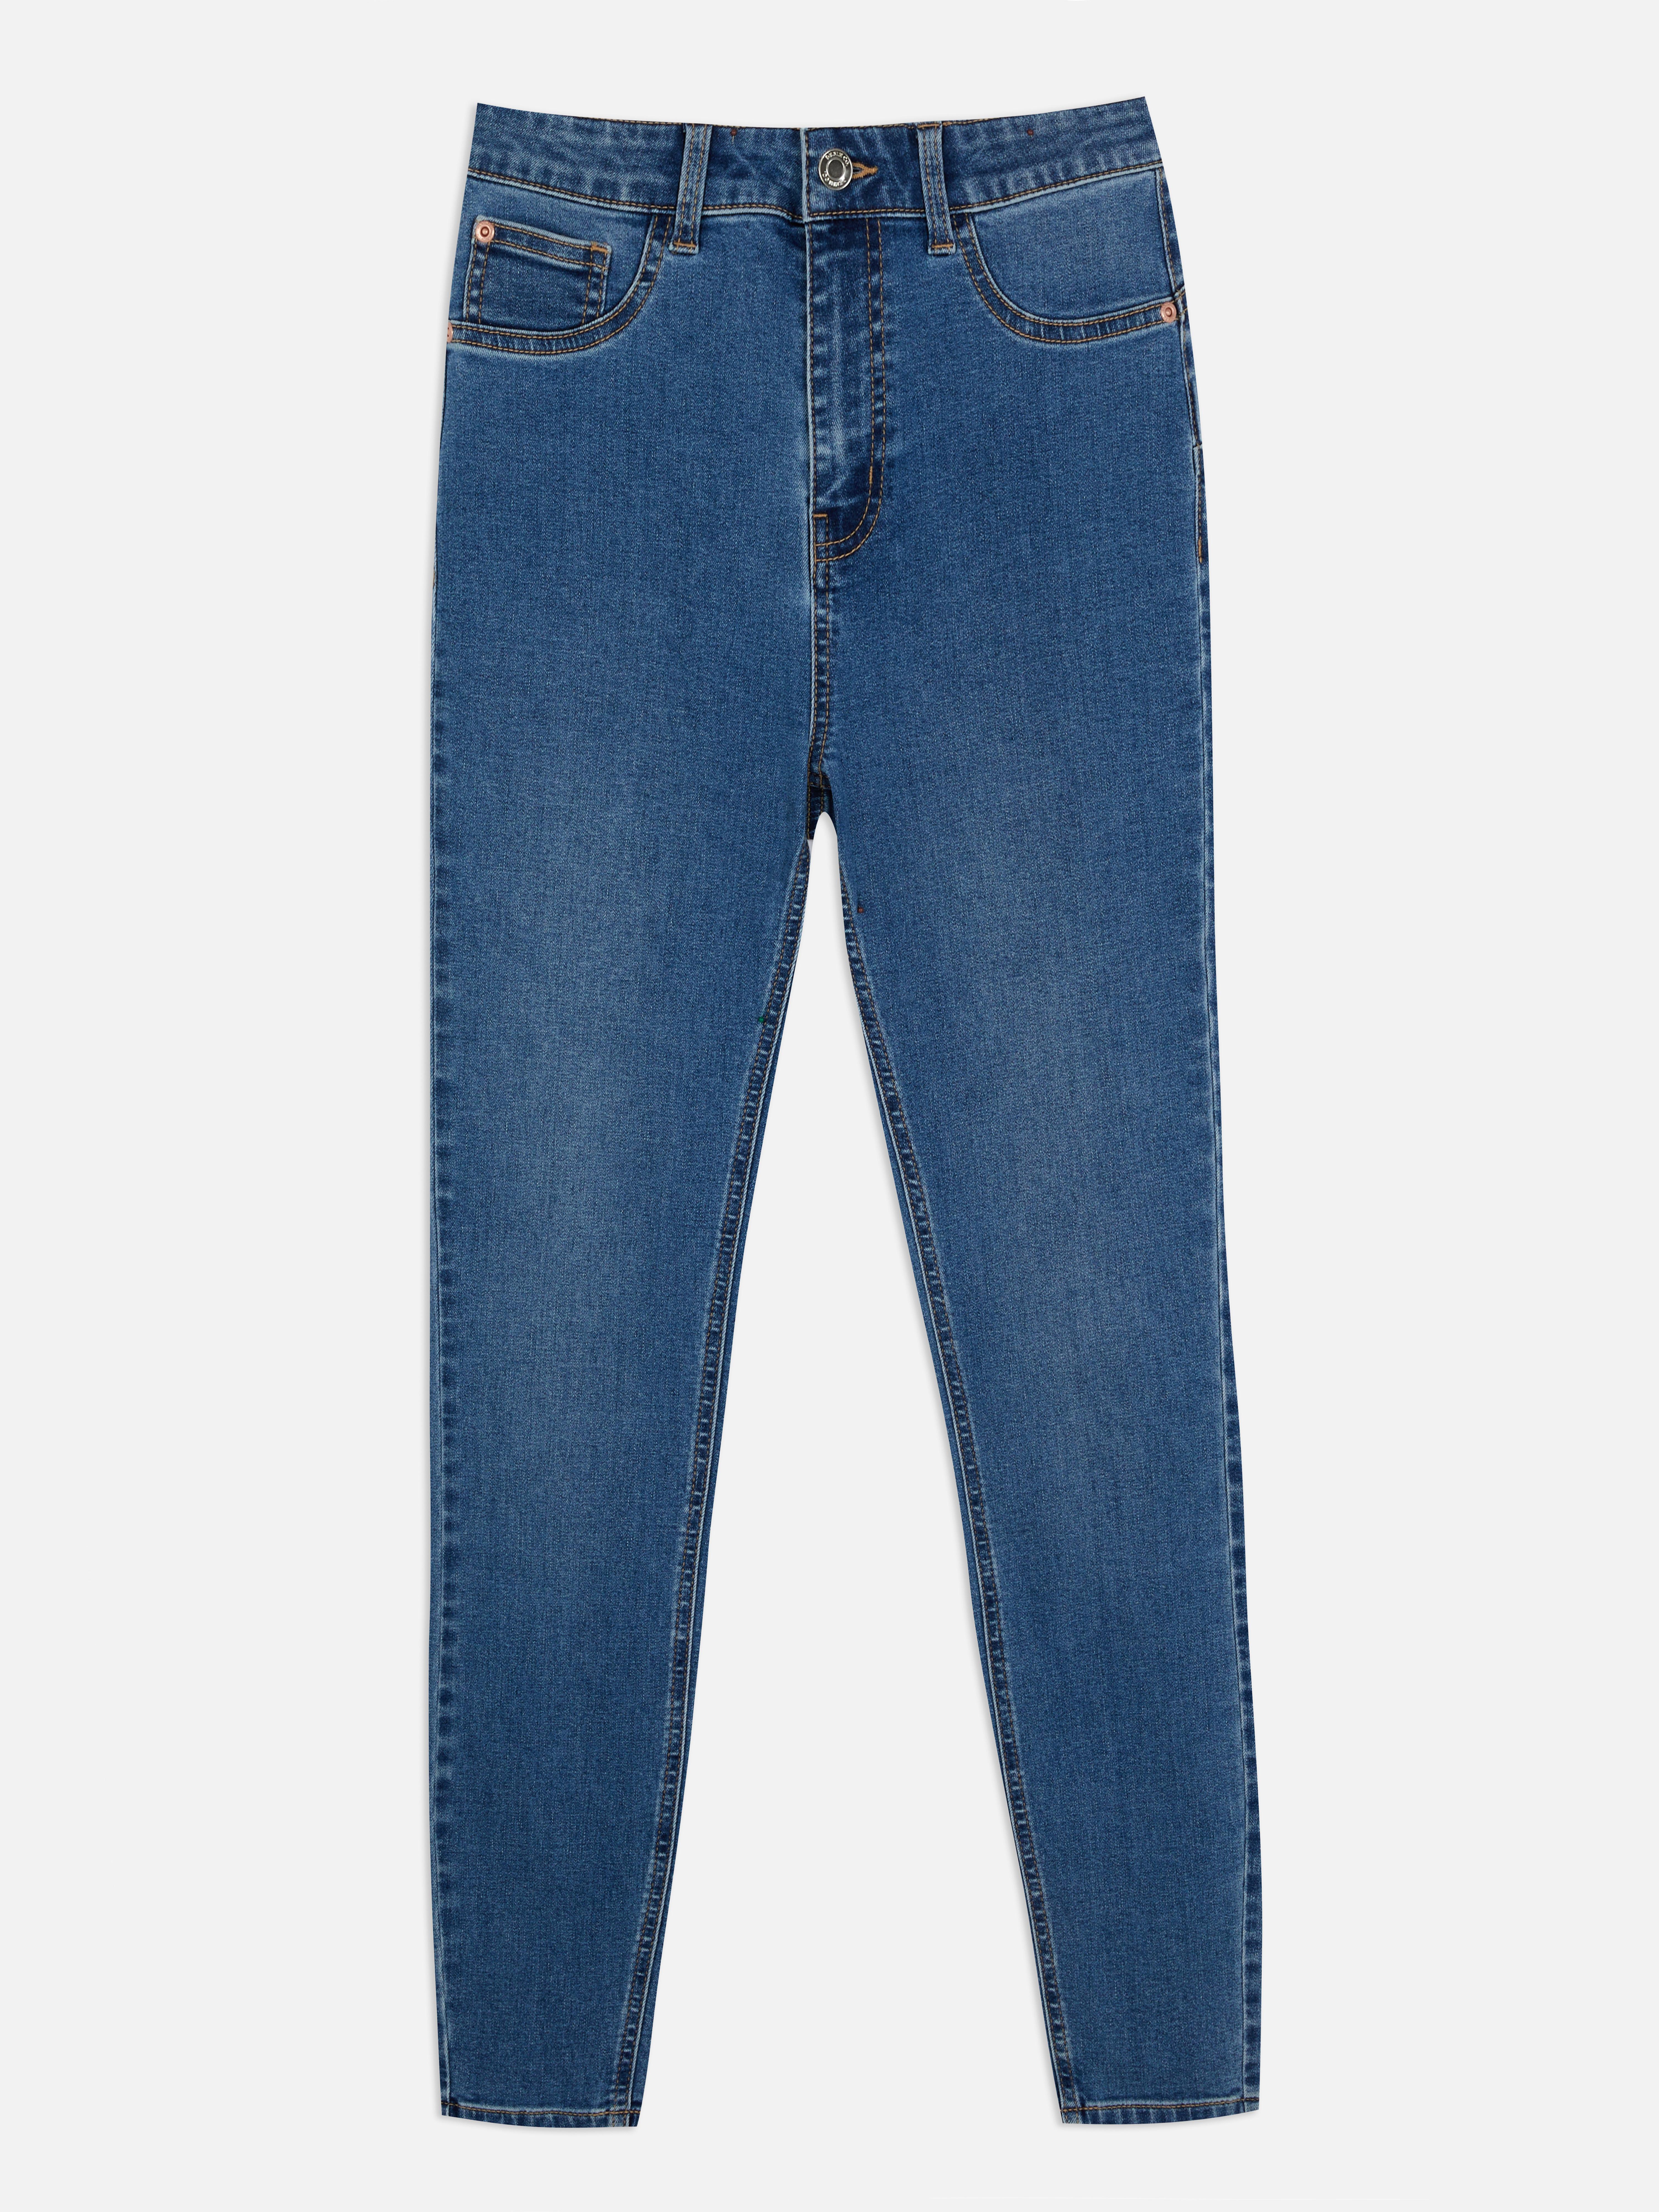 Afkledende jeans | Jeans voor dames | Dameskleding | Onze modecollectie voor dames | Alle Primark-producten | Primark België Nederlands